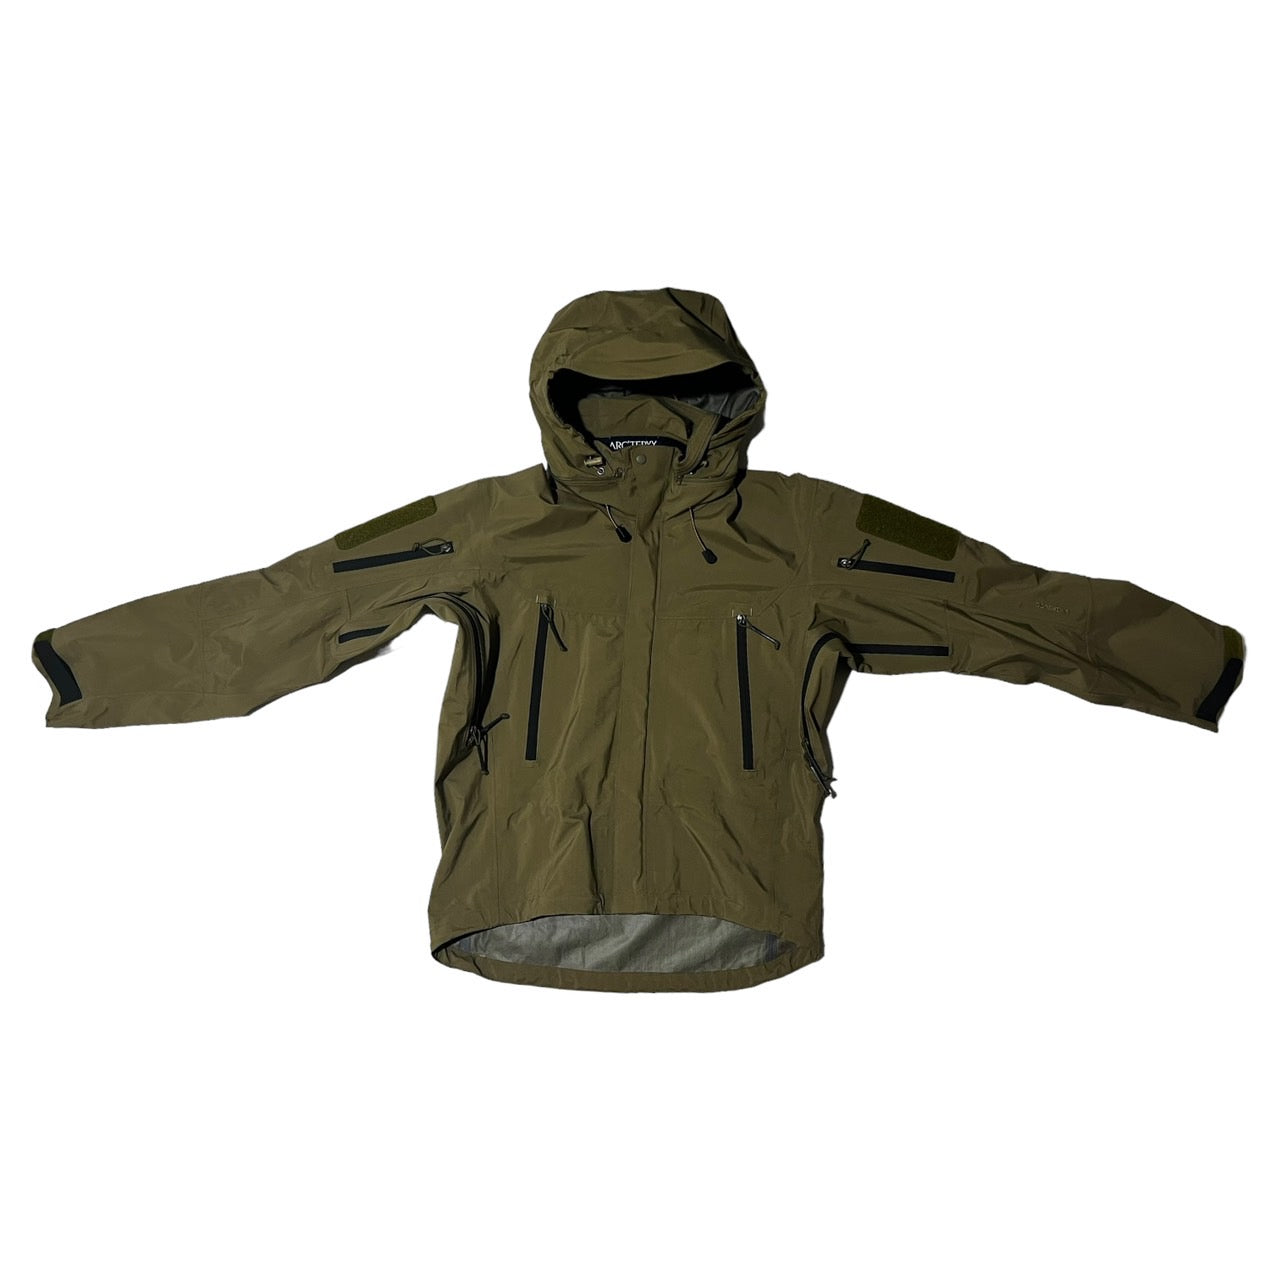 ARC'TERYX(アークテリクス) 00's GORE-TEX LEAF Alpha jacket GEN1//アルファジャケット/マウンテンパーカー 3161 S カーキ 軍用規格/ミリタリー/カナダ製/紺タグ